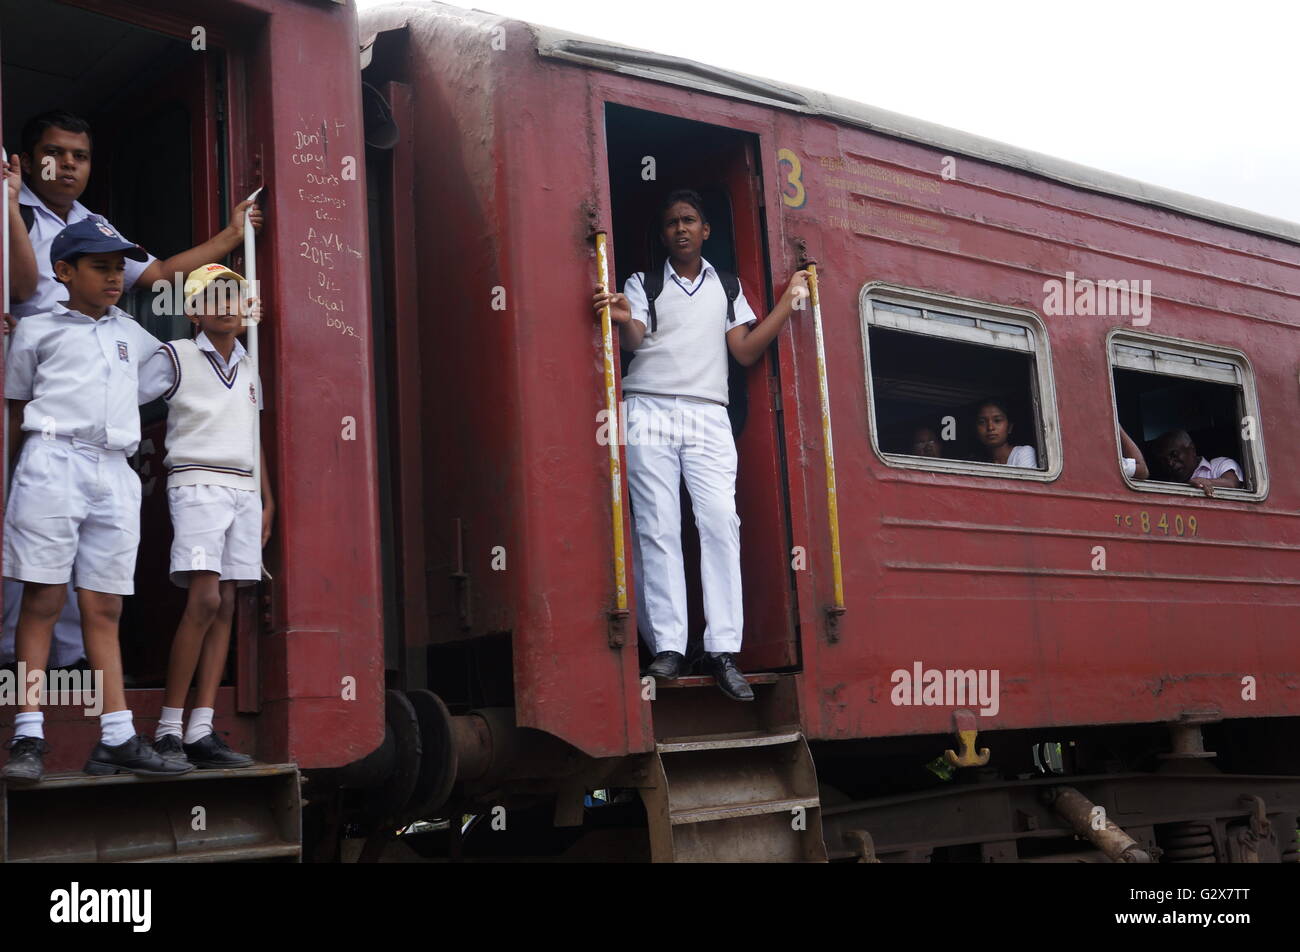 Junge Studenten in Uniform auf dem Weg zurück vom Schule stehen auf den Plattformen von einem alten Zug, Kandy, Sri Lanka. Stockfoto